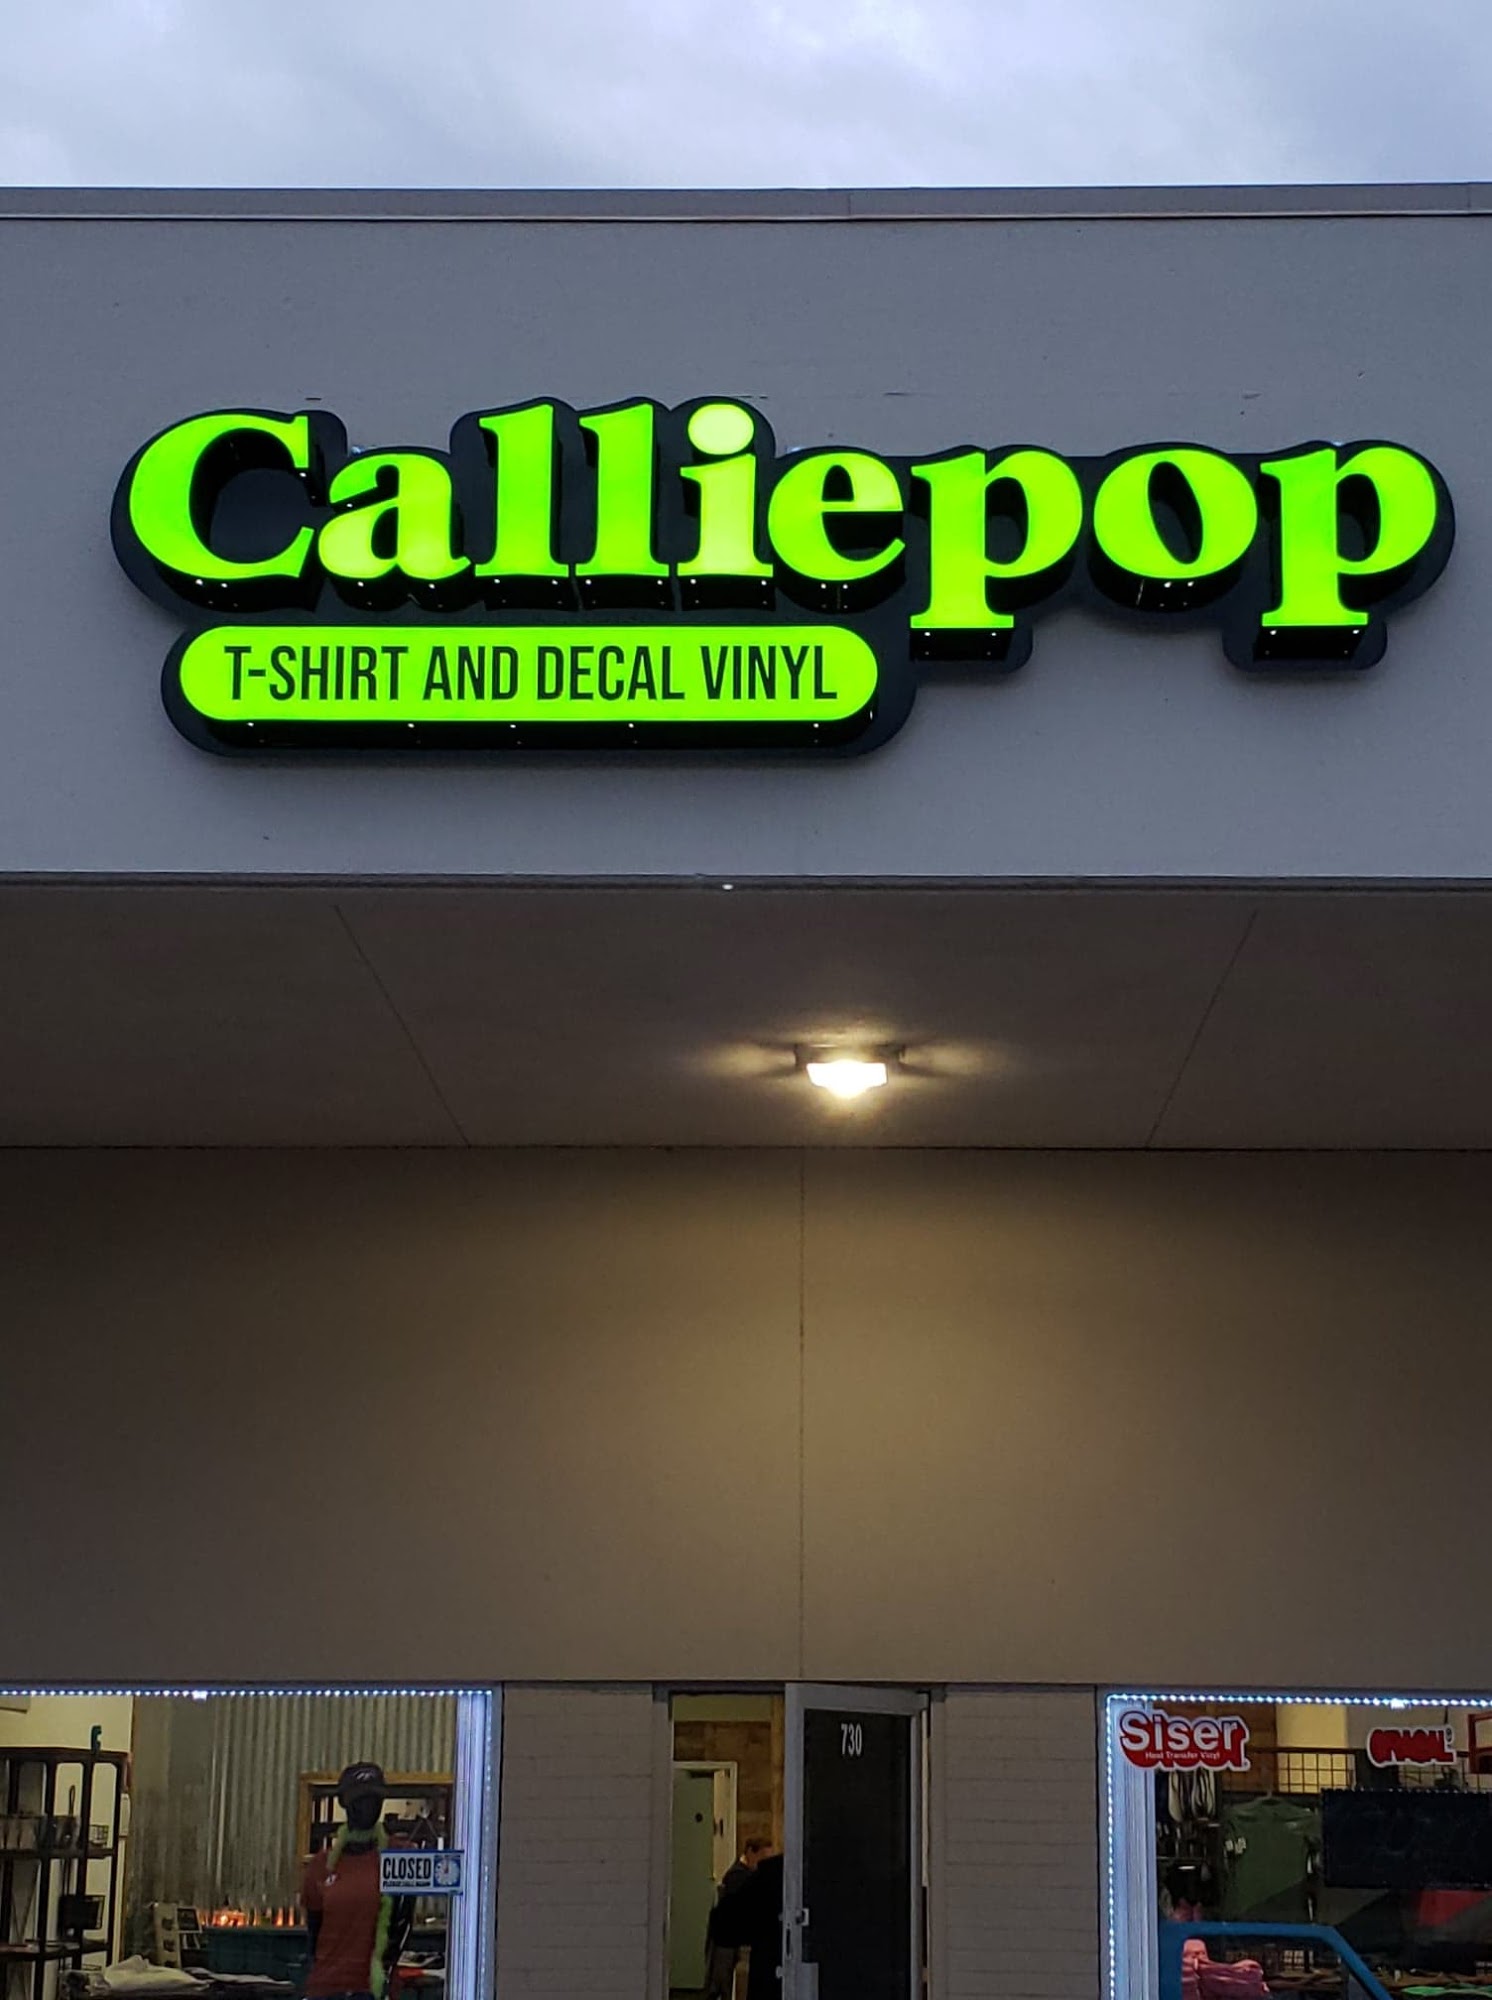 Calliepop Vinyl